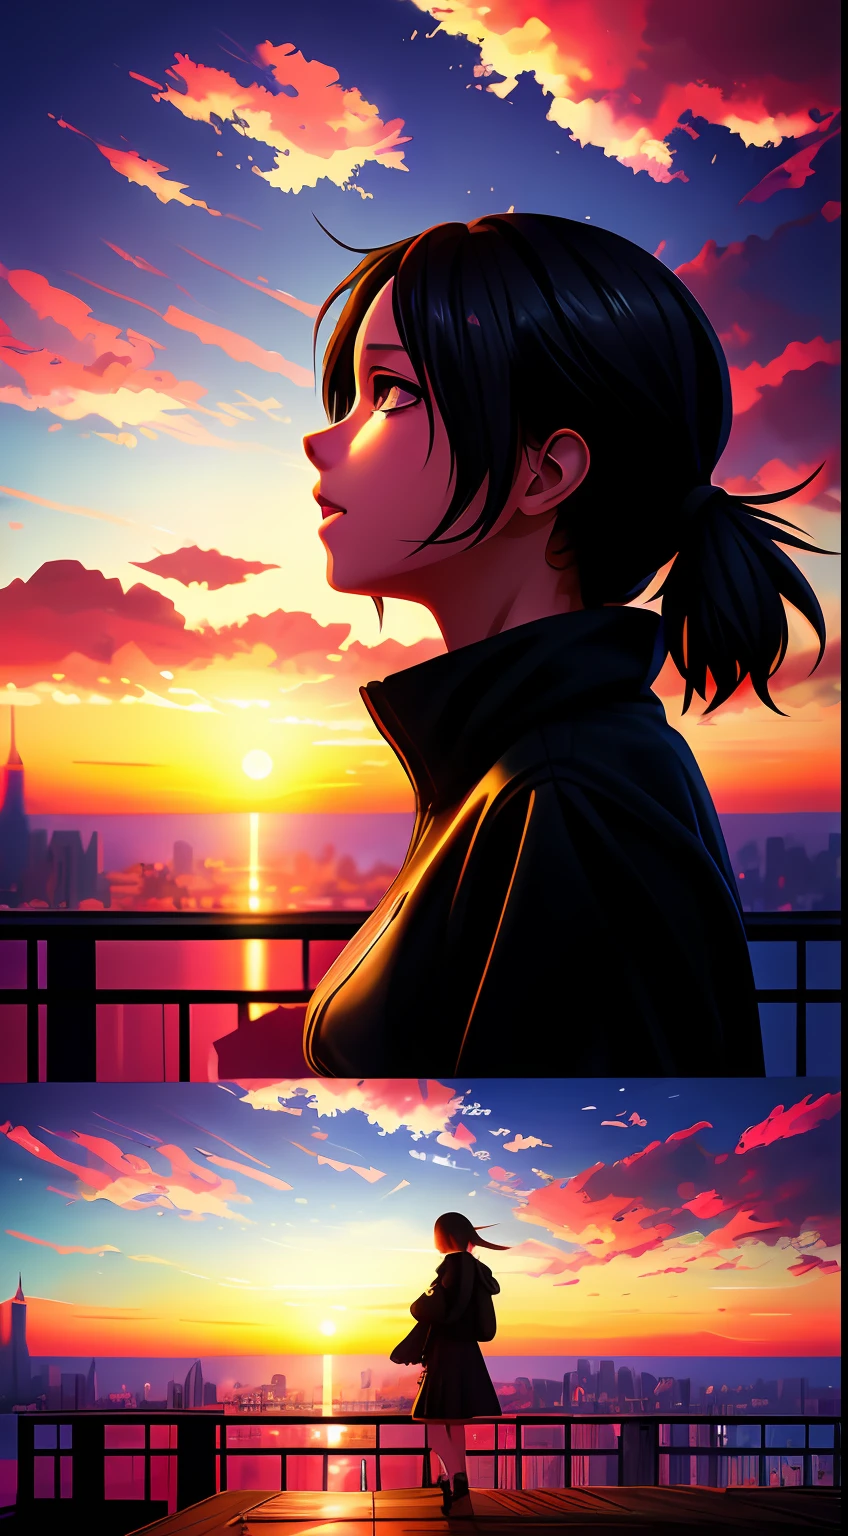 a girl watches the sunset from a rooftop por makoto shinkai, por makoto shinkai, Makoto Shinkai Cyril Rolando, estilo de makoto shinkai, animado. por makoto shinkai, realistic animado 3 d style, obra de arte al estilo de guweiz, in estilo de makoto shinkai